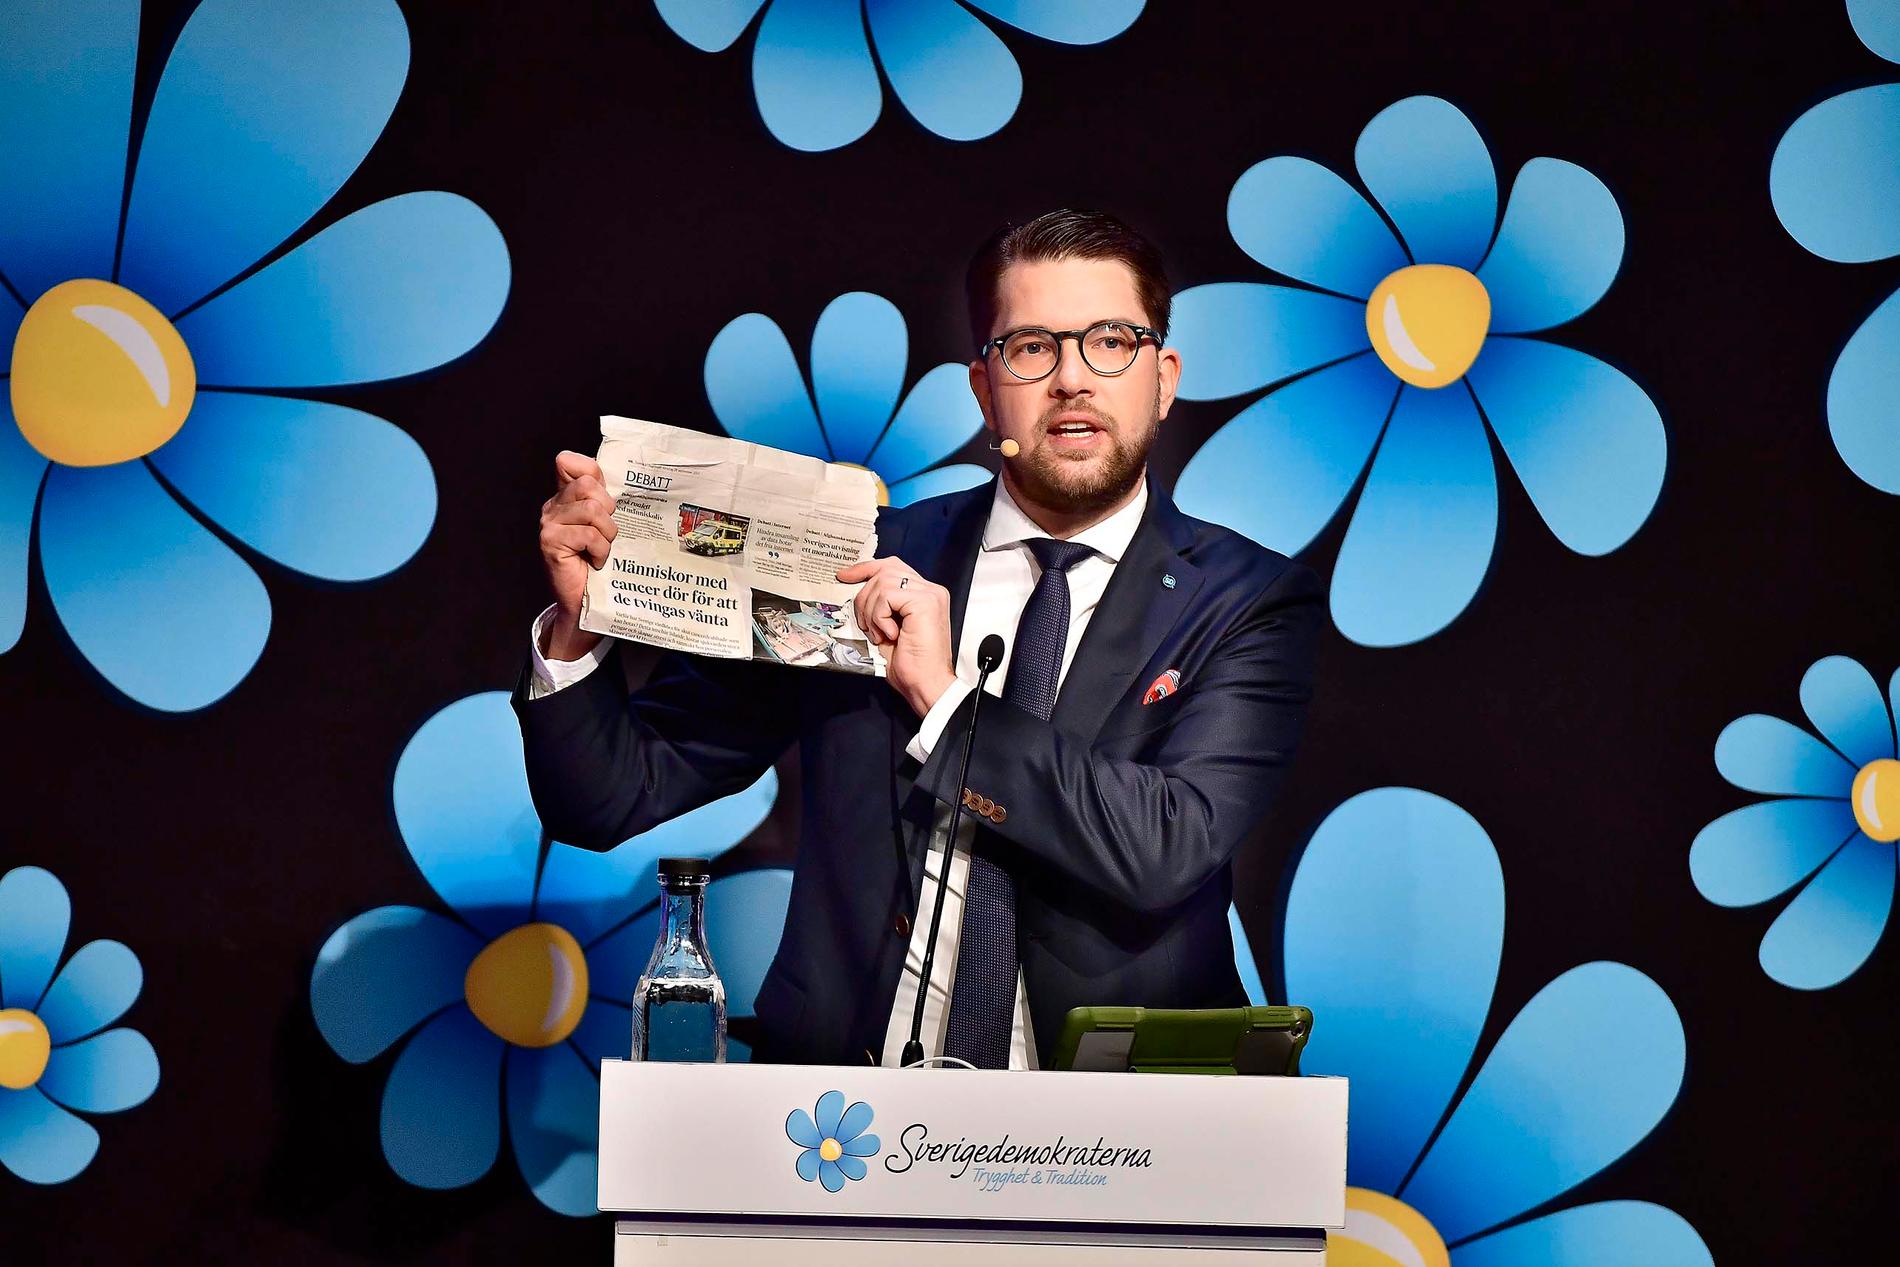 Sverigedemokraternas partiledaren Jimmie Åkesson håller stora tal inför partikamraterna.